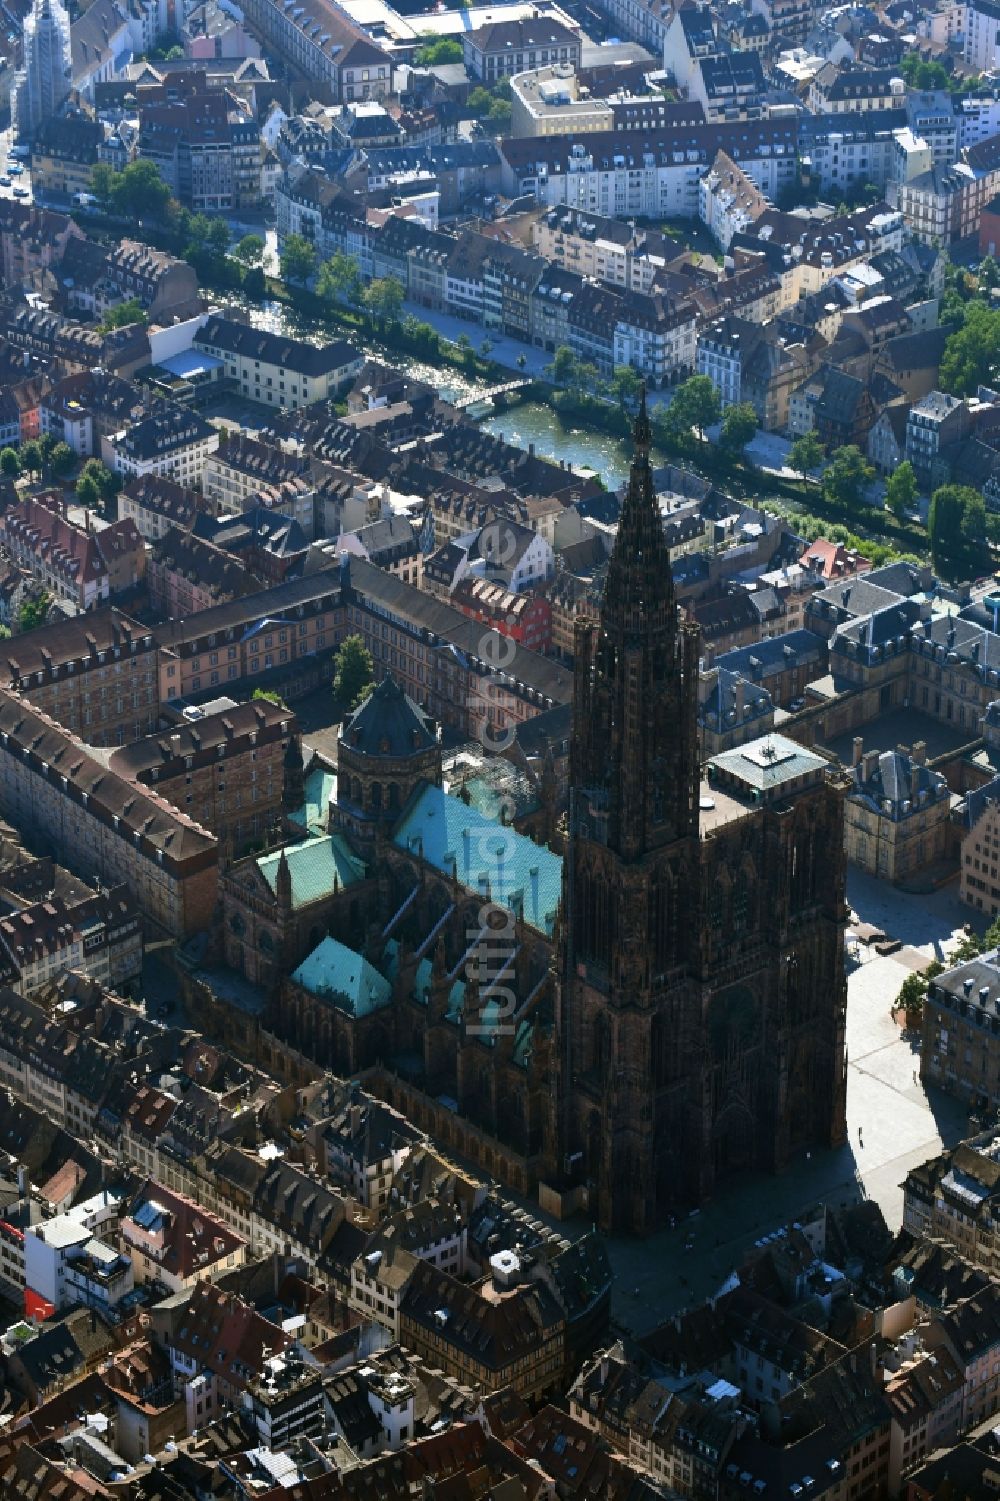 Luftaufnahme Strasbourg - Straßburg - Kathedrale Straßburger Münster Cathedrale Notre Dame de Strasbourg in Strasbourg - Straßburg in Grand Est, Frankreich